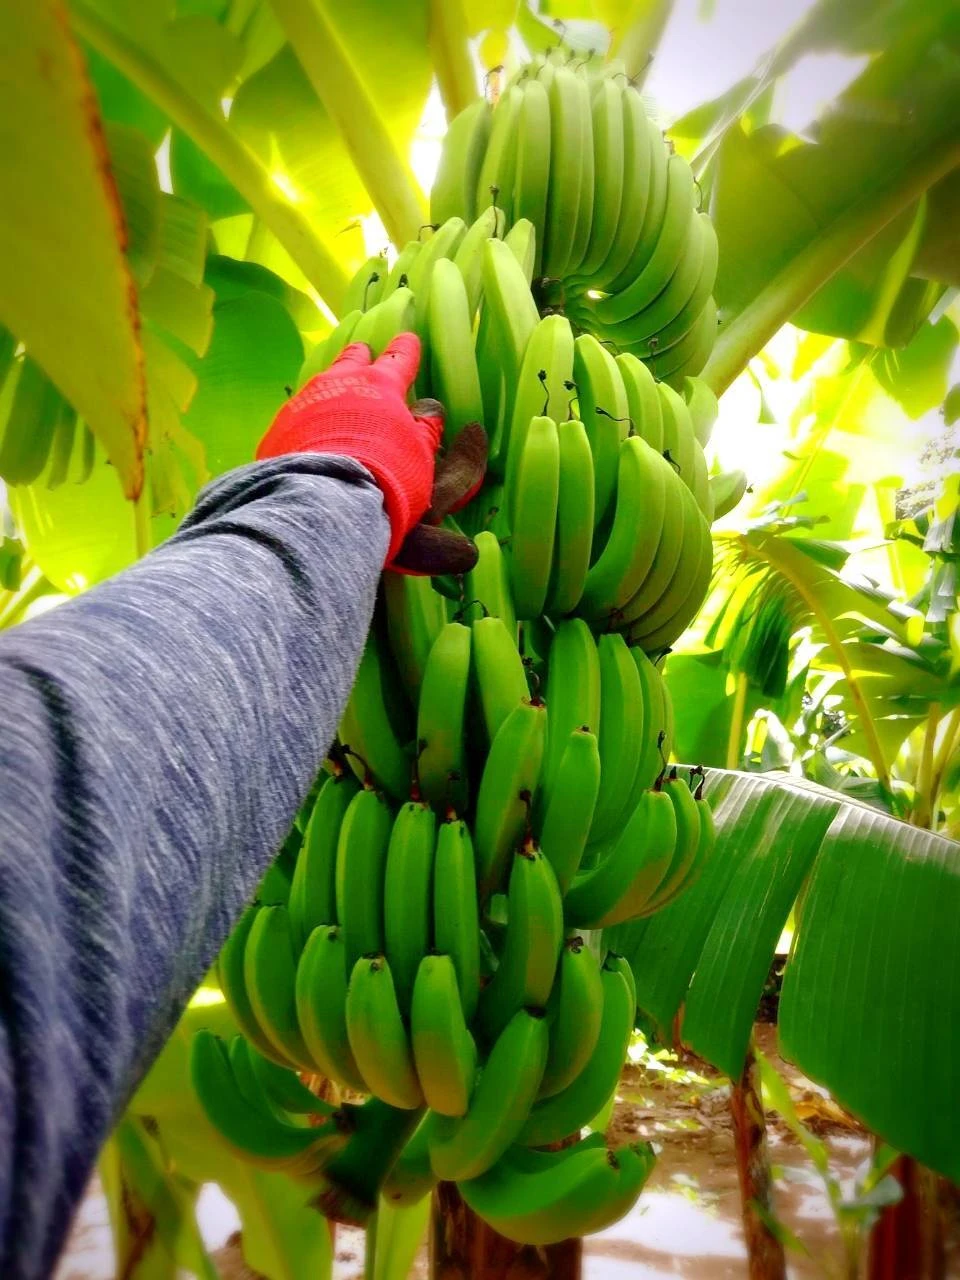 【農薬・化学肥料】幻の品種 国産バナナプチサイズ800g【栽培期間中不使用】